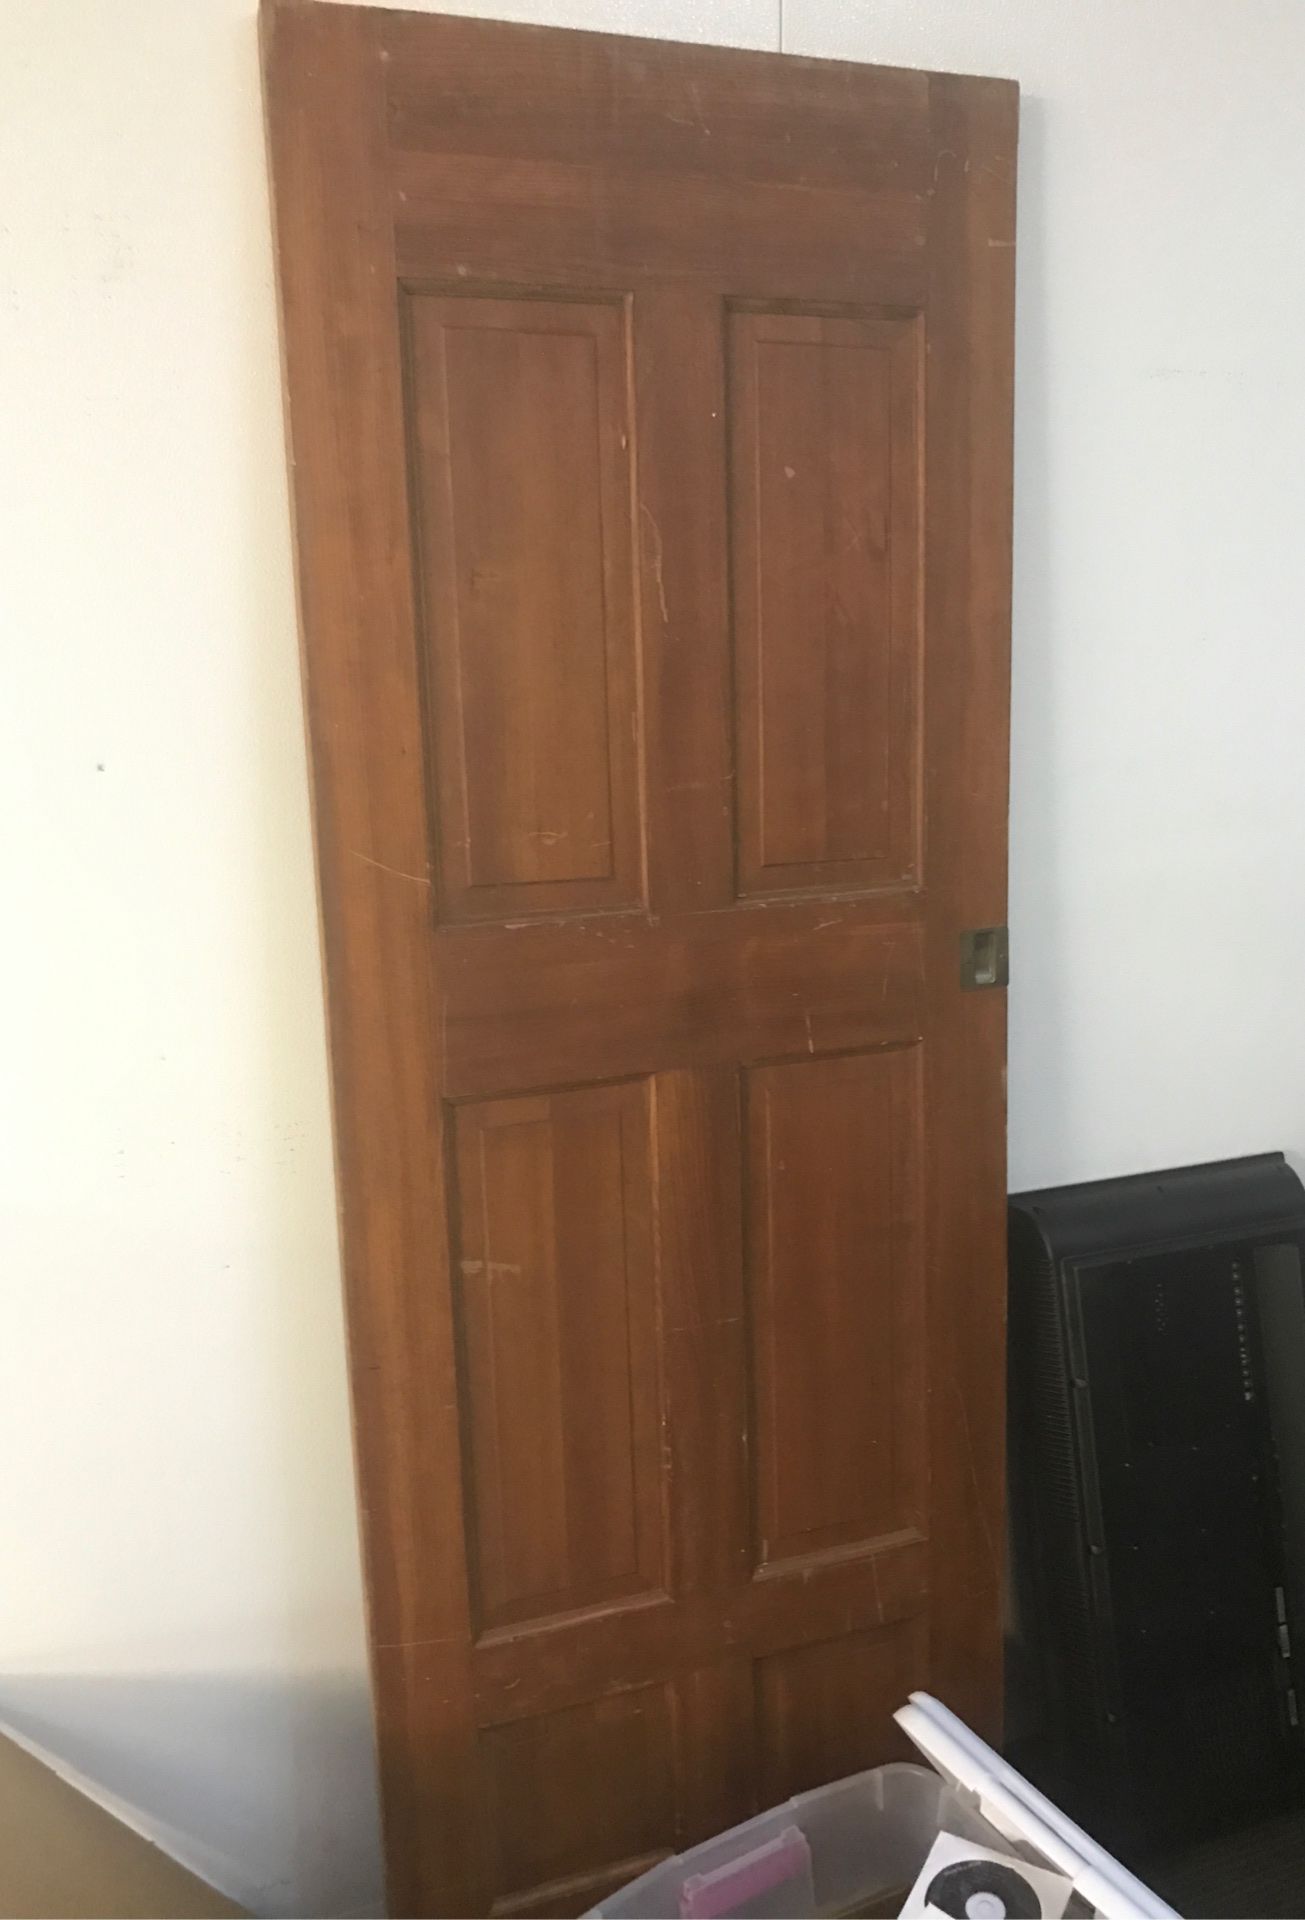 Solid wood six panel door